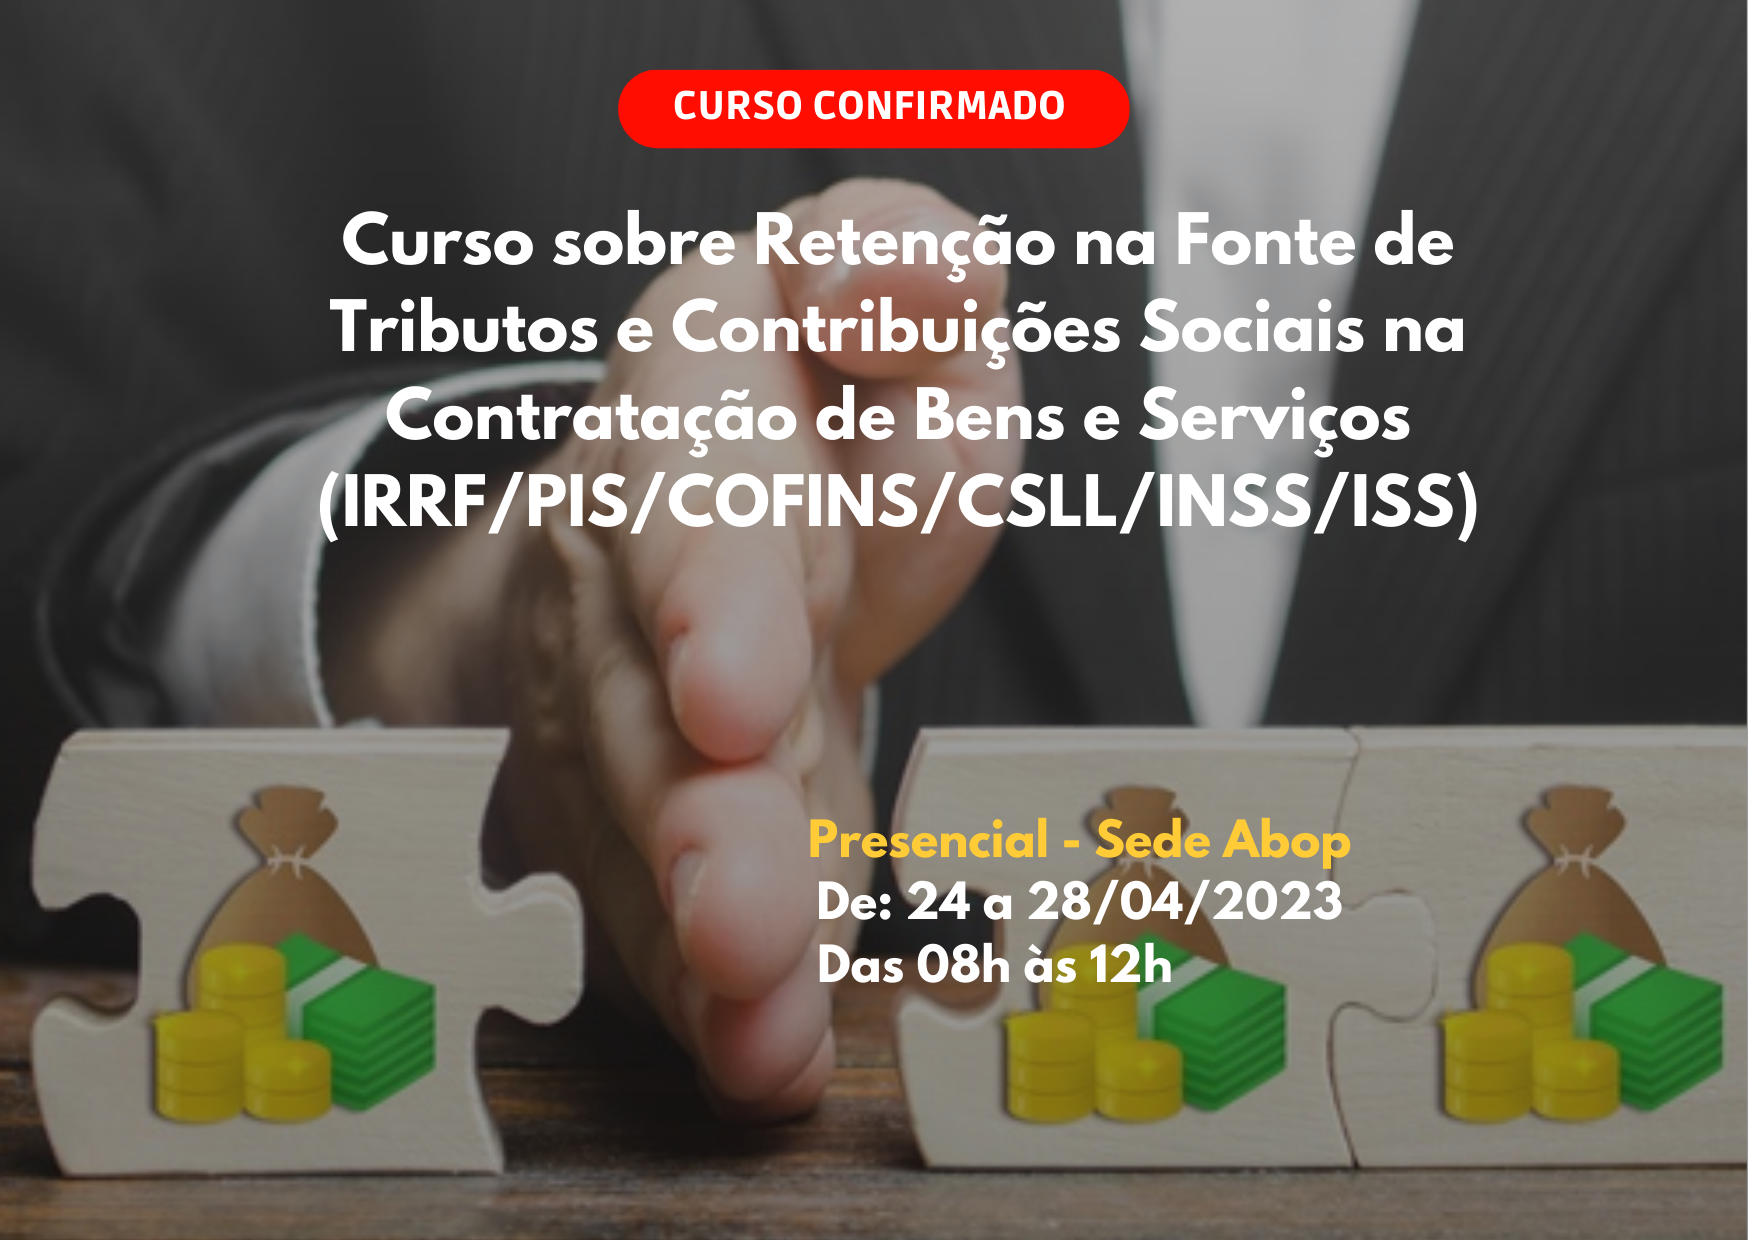 Retenção na Fonte de Tributos e Contribuições Sociais na Contratação de Bens e Serviços (IRRF/PIS/COFINS/CSLL/INSS/ISS)